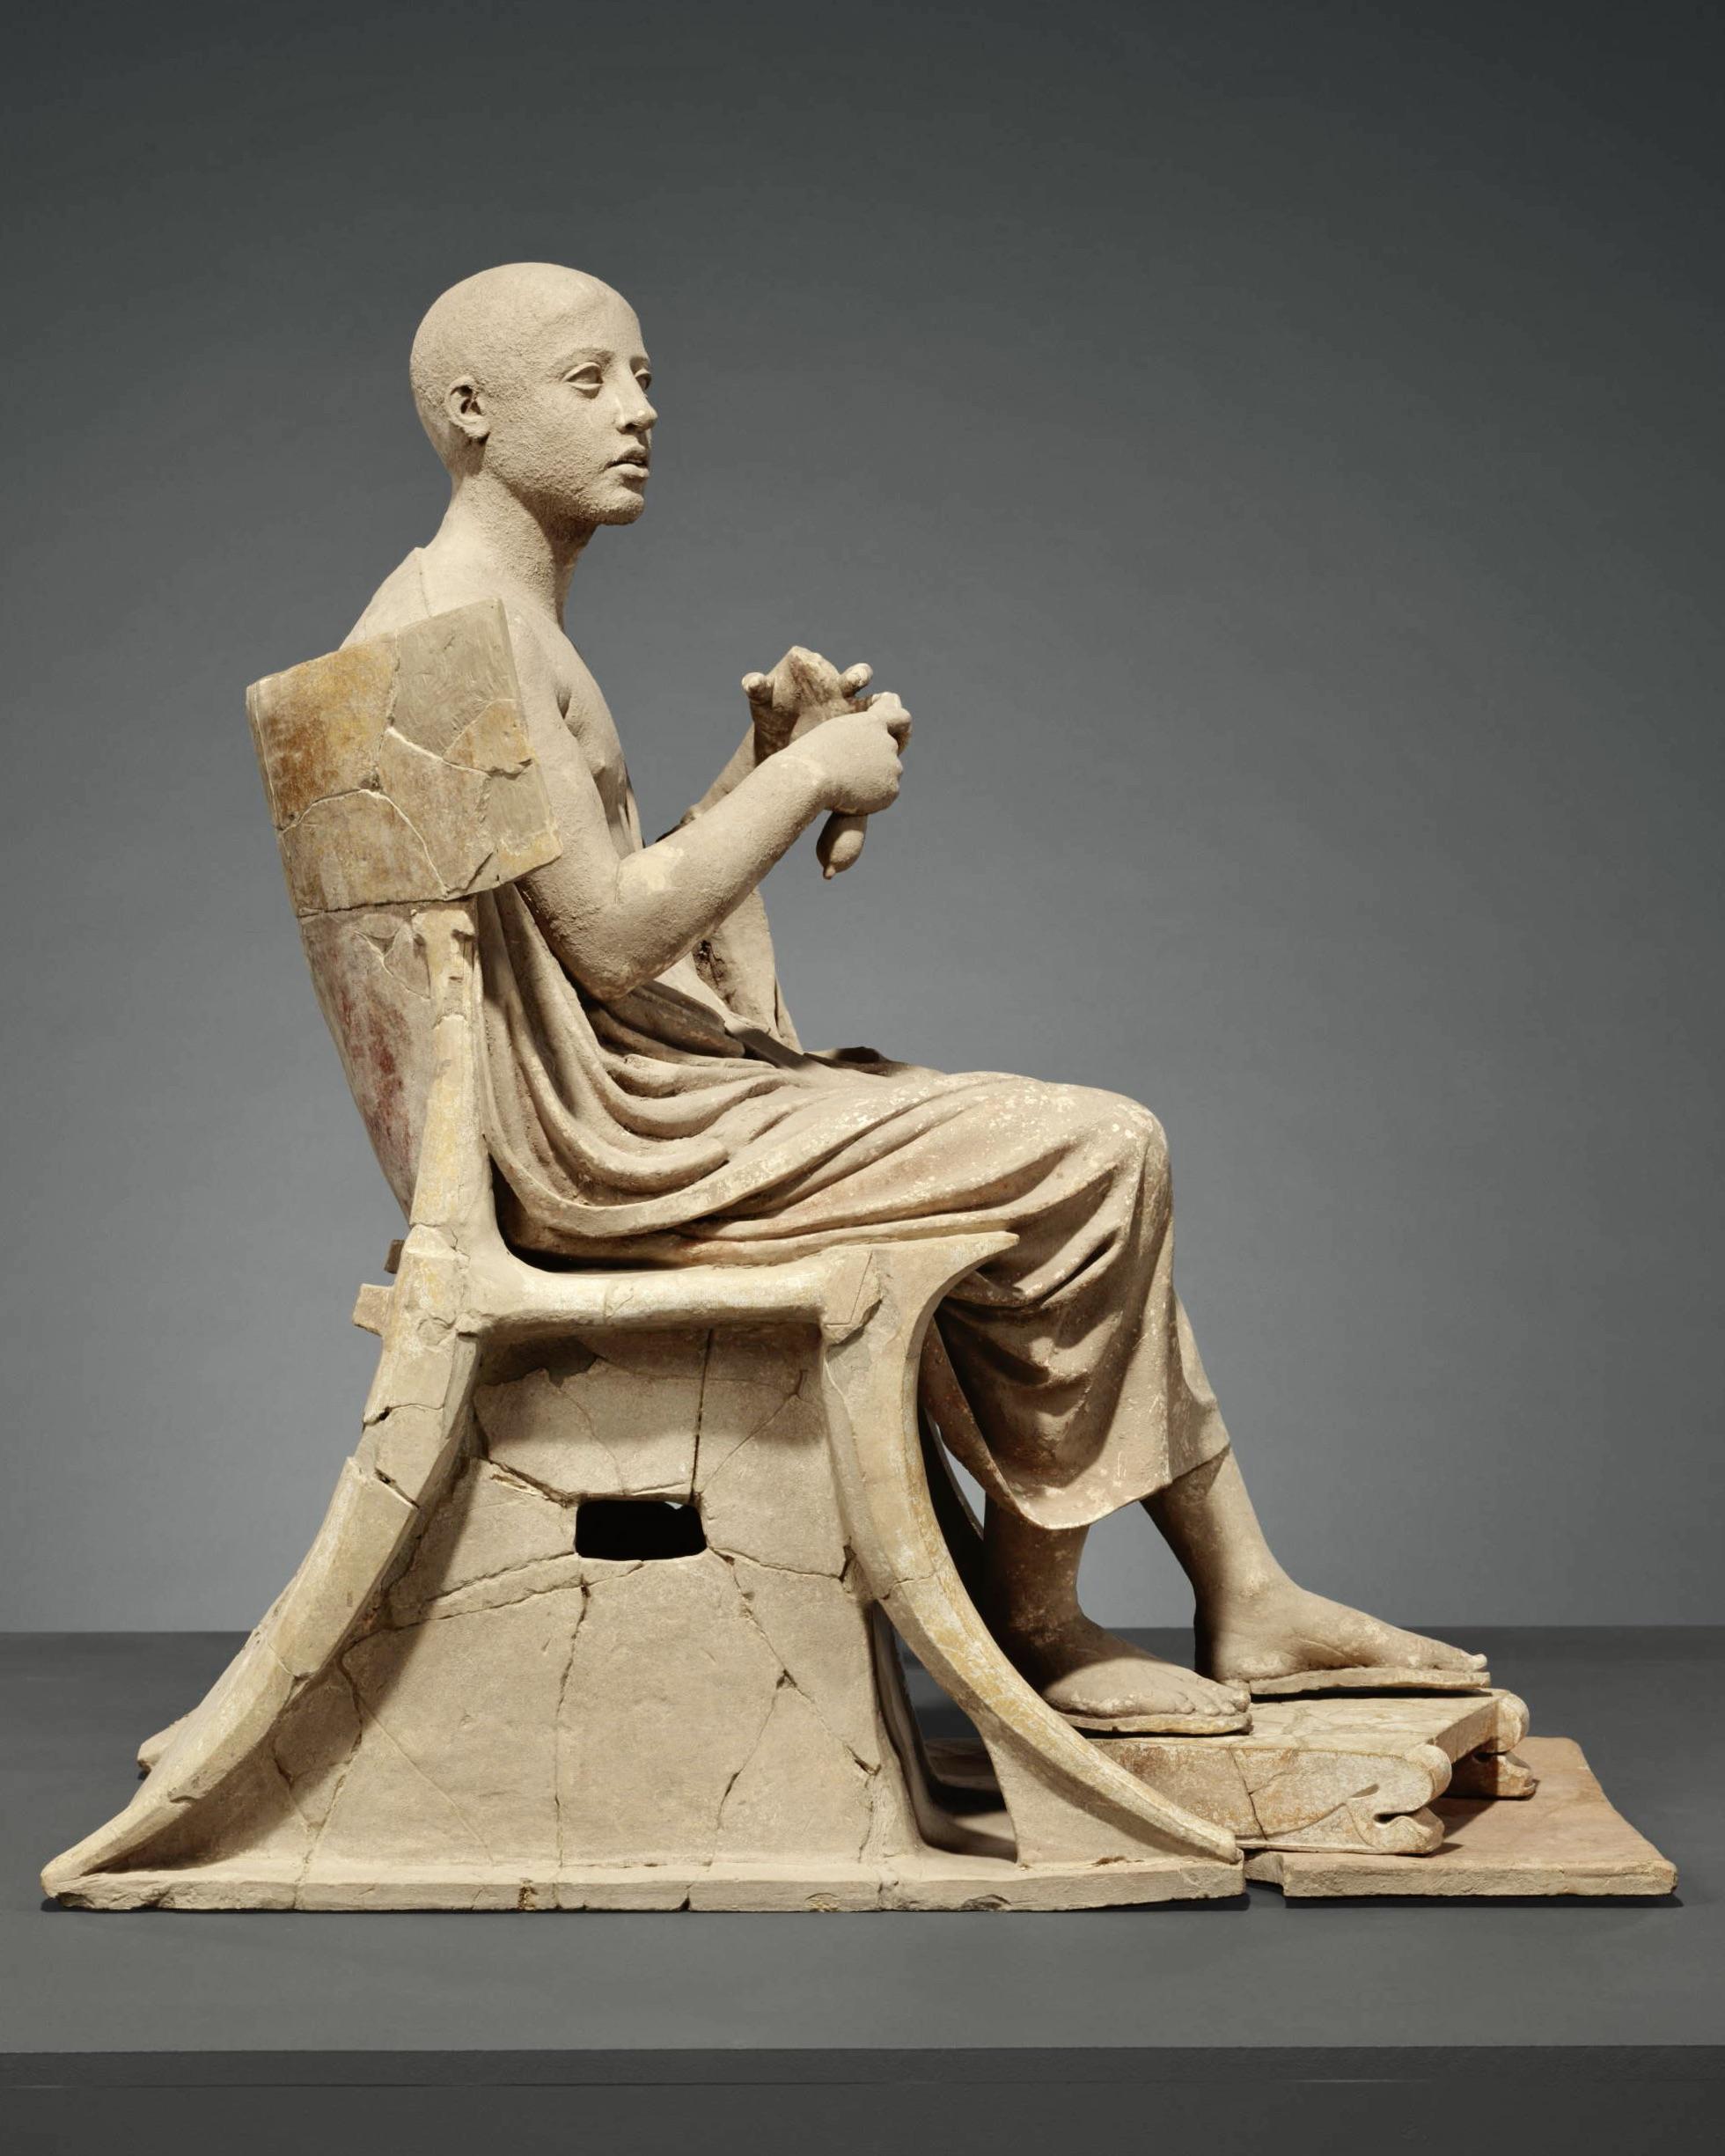 Πήλινος ανδριάντας καθημένης μορφής ποιητή, αοιδού ή του Ορφέα, από επιτάφιο σύνταγμα με δύο Σειρήνες, MArTA - Museo Archeologico Nazionale di Taranto.